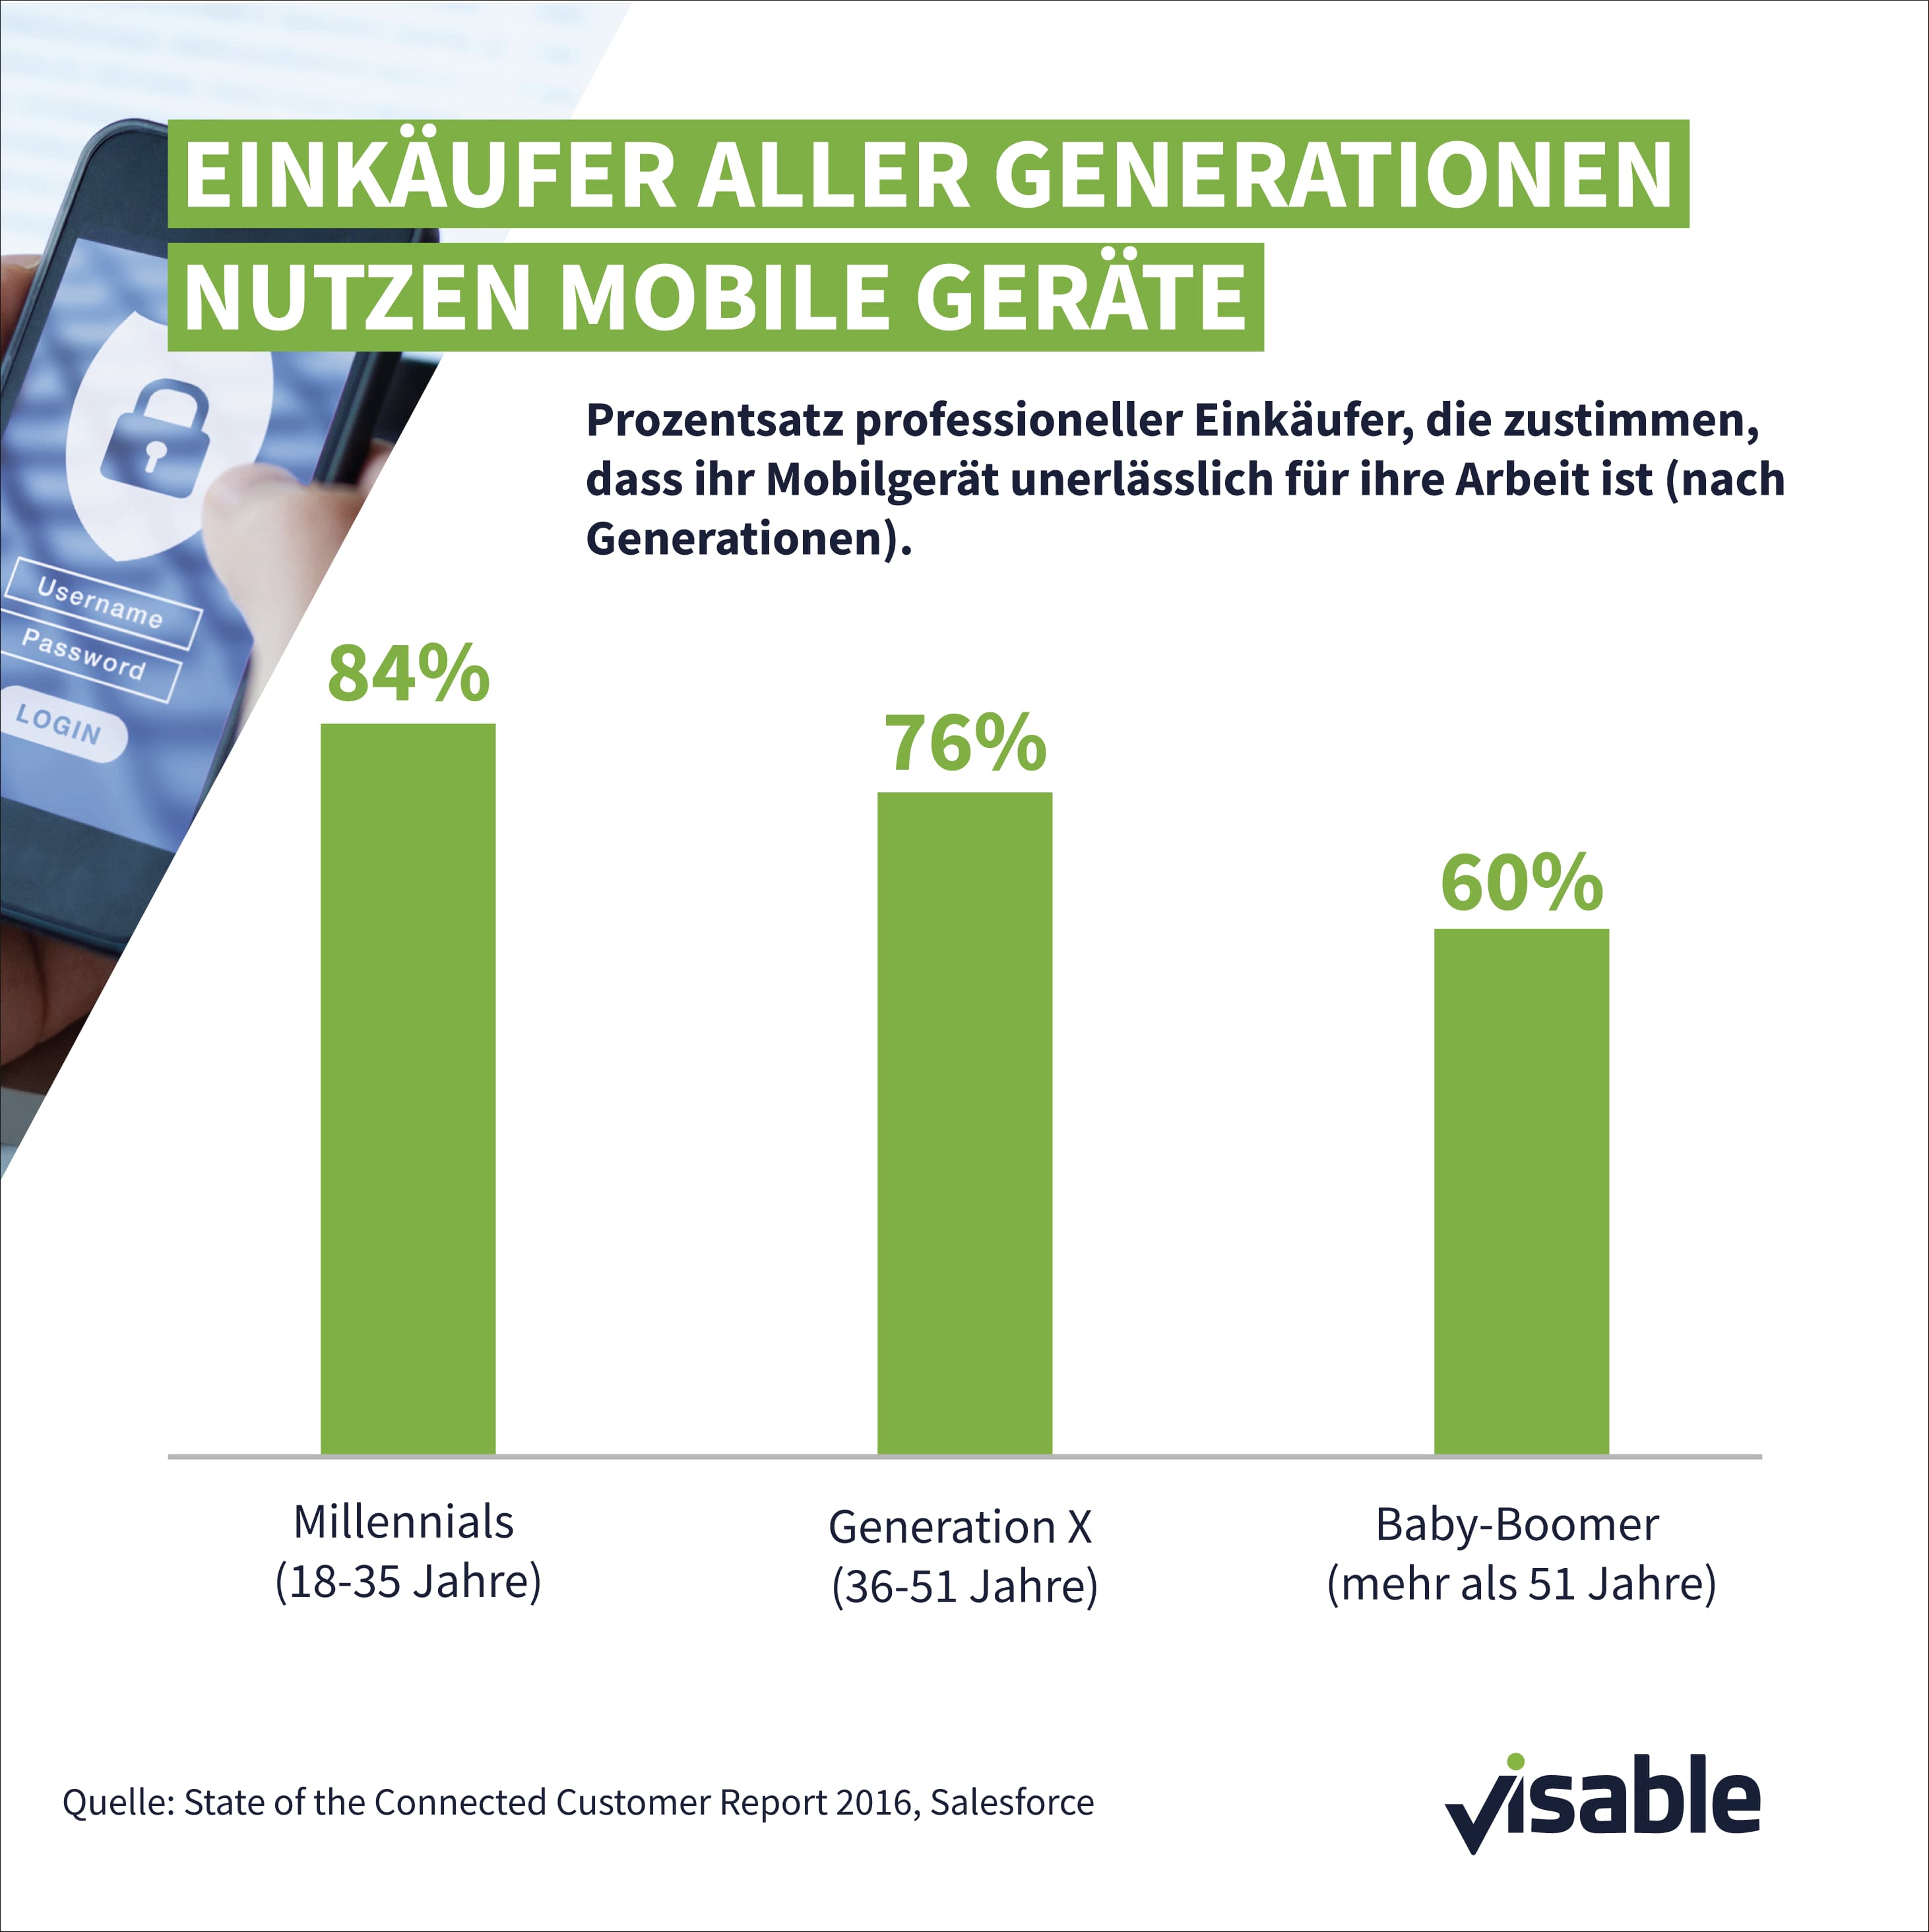 B2B-Marketing: Einkäufer nutzen mobile Geräte